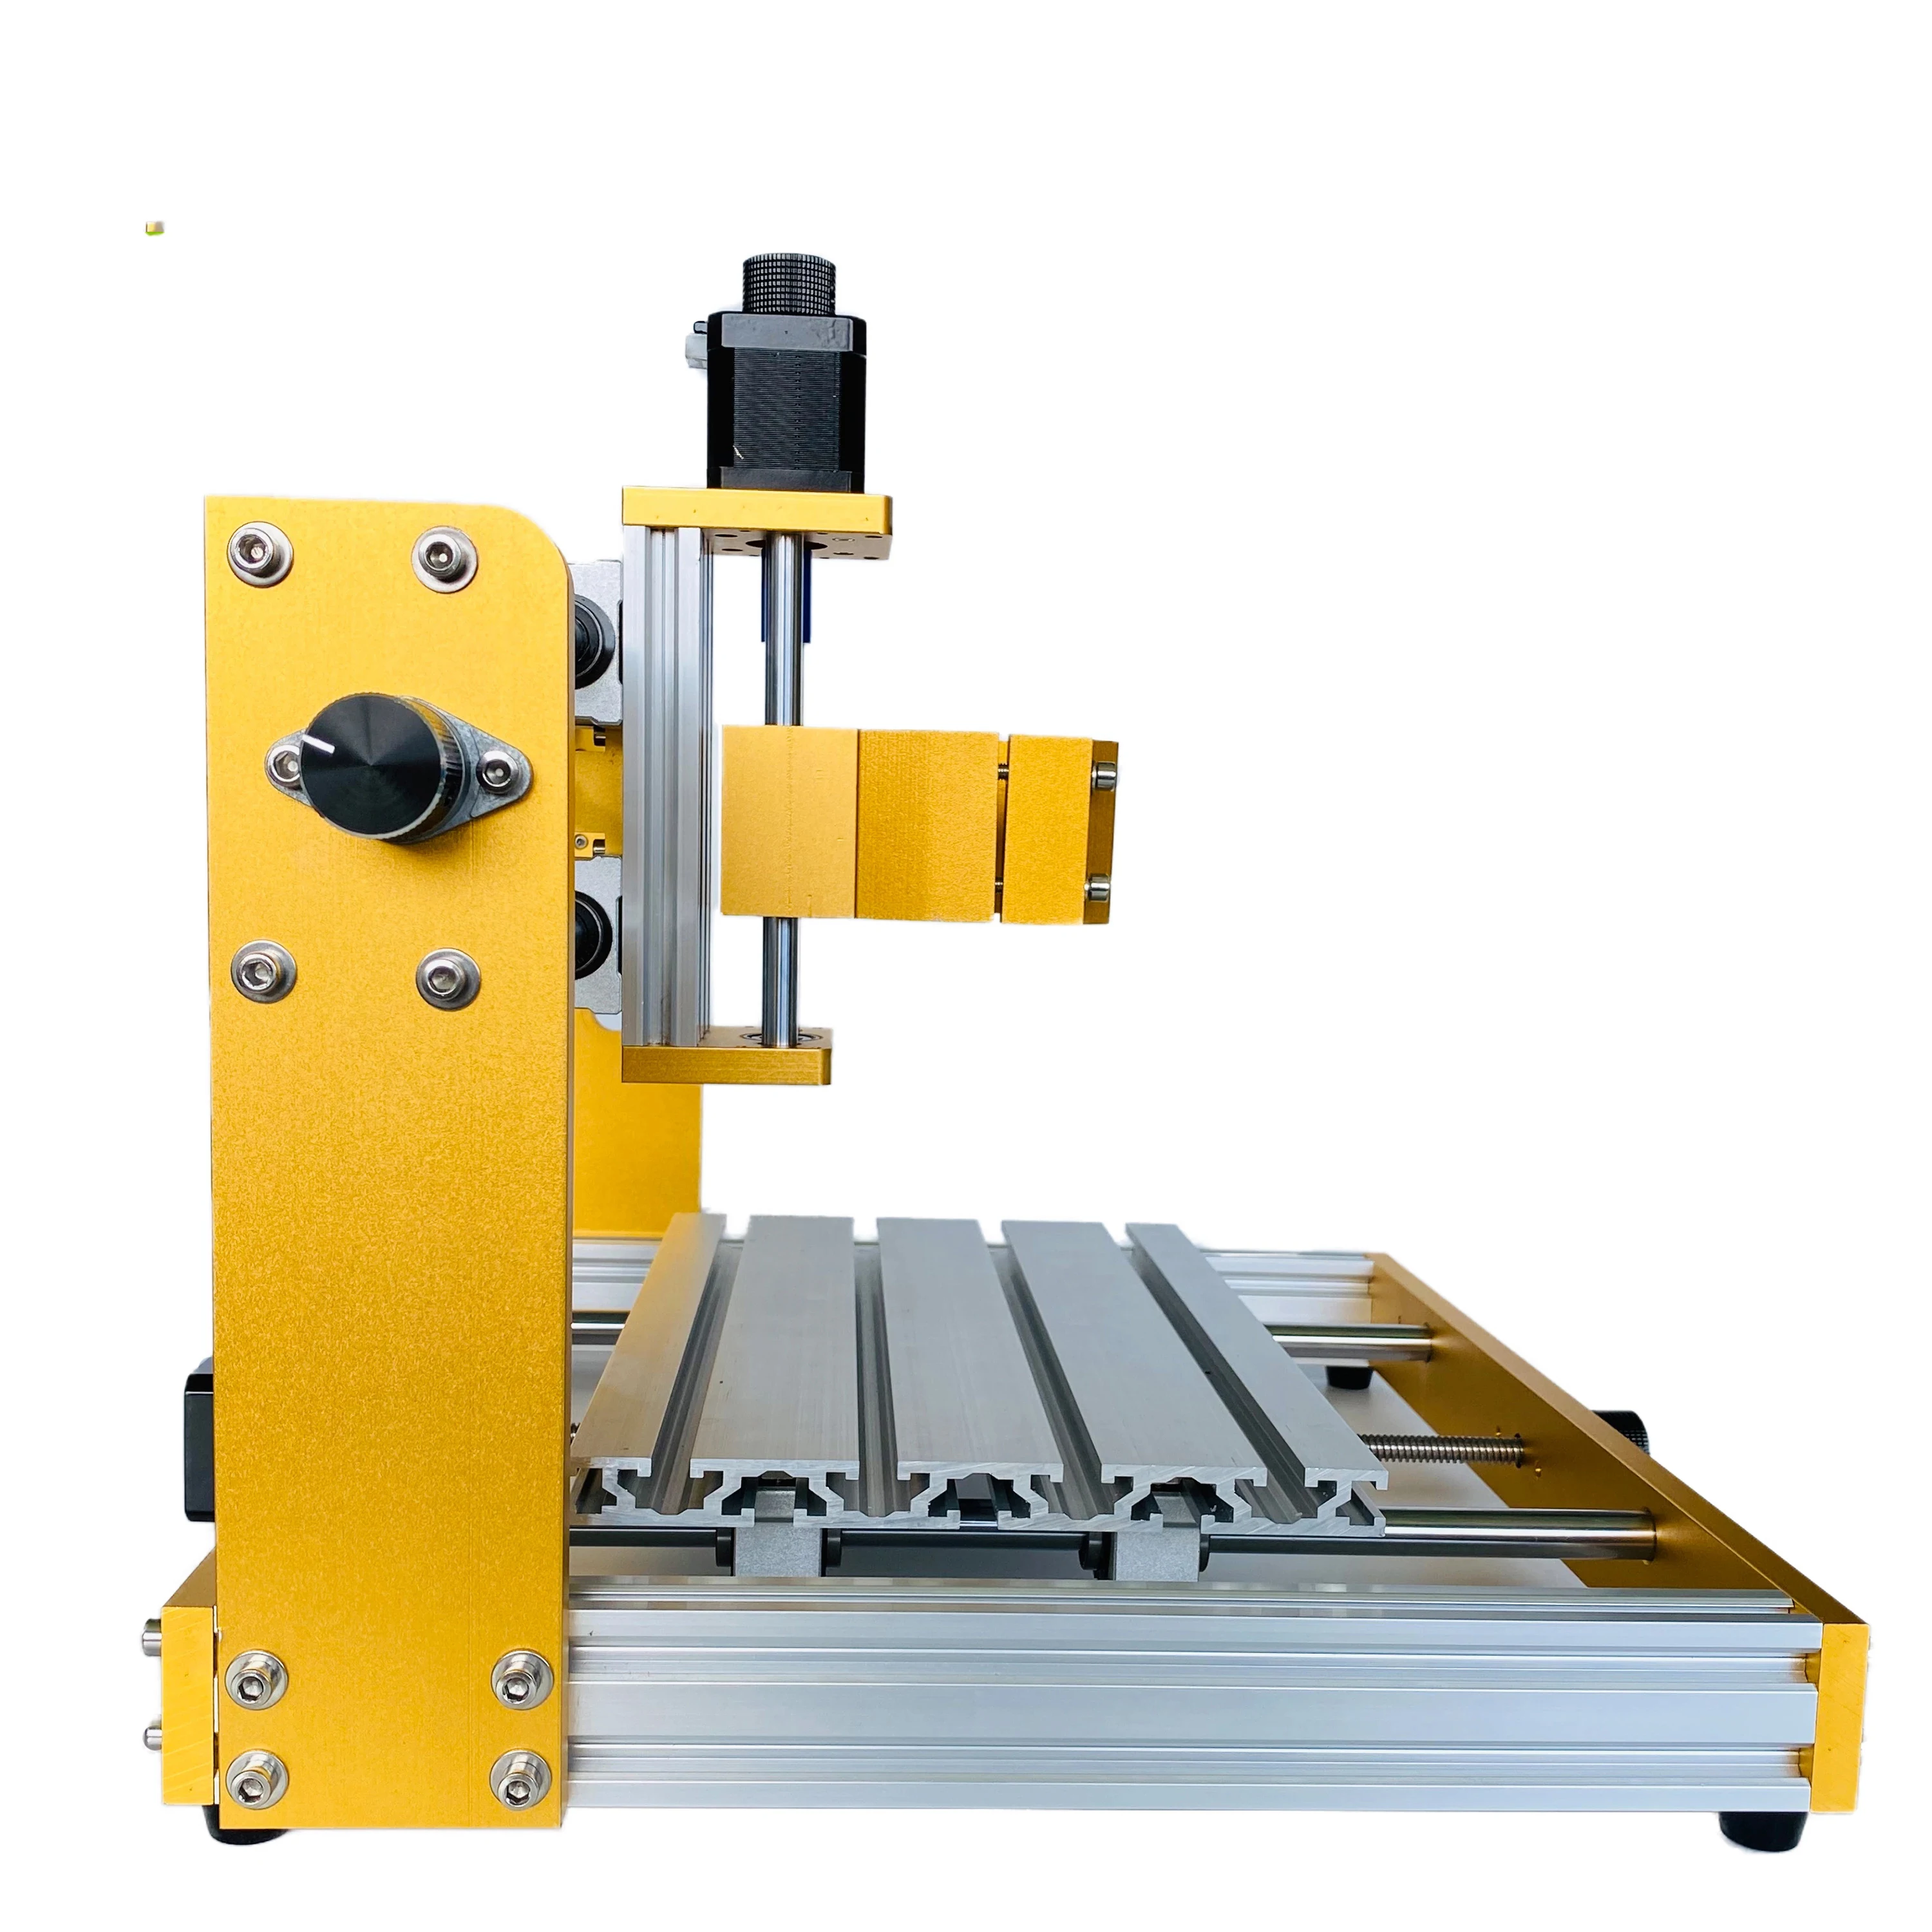 New CNC 3018 Pro Laser Engraver Metal Frame CNC 3018 Upgrade Kit for Nema17 42BYG Stepper Motor Spindle Hole Diameter 52mm enlarge